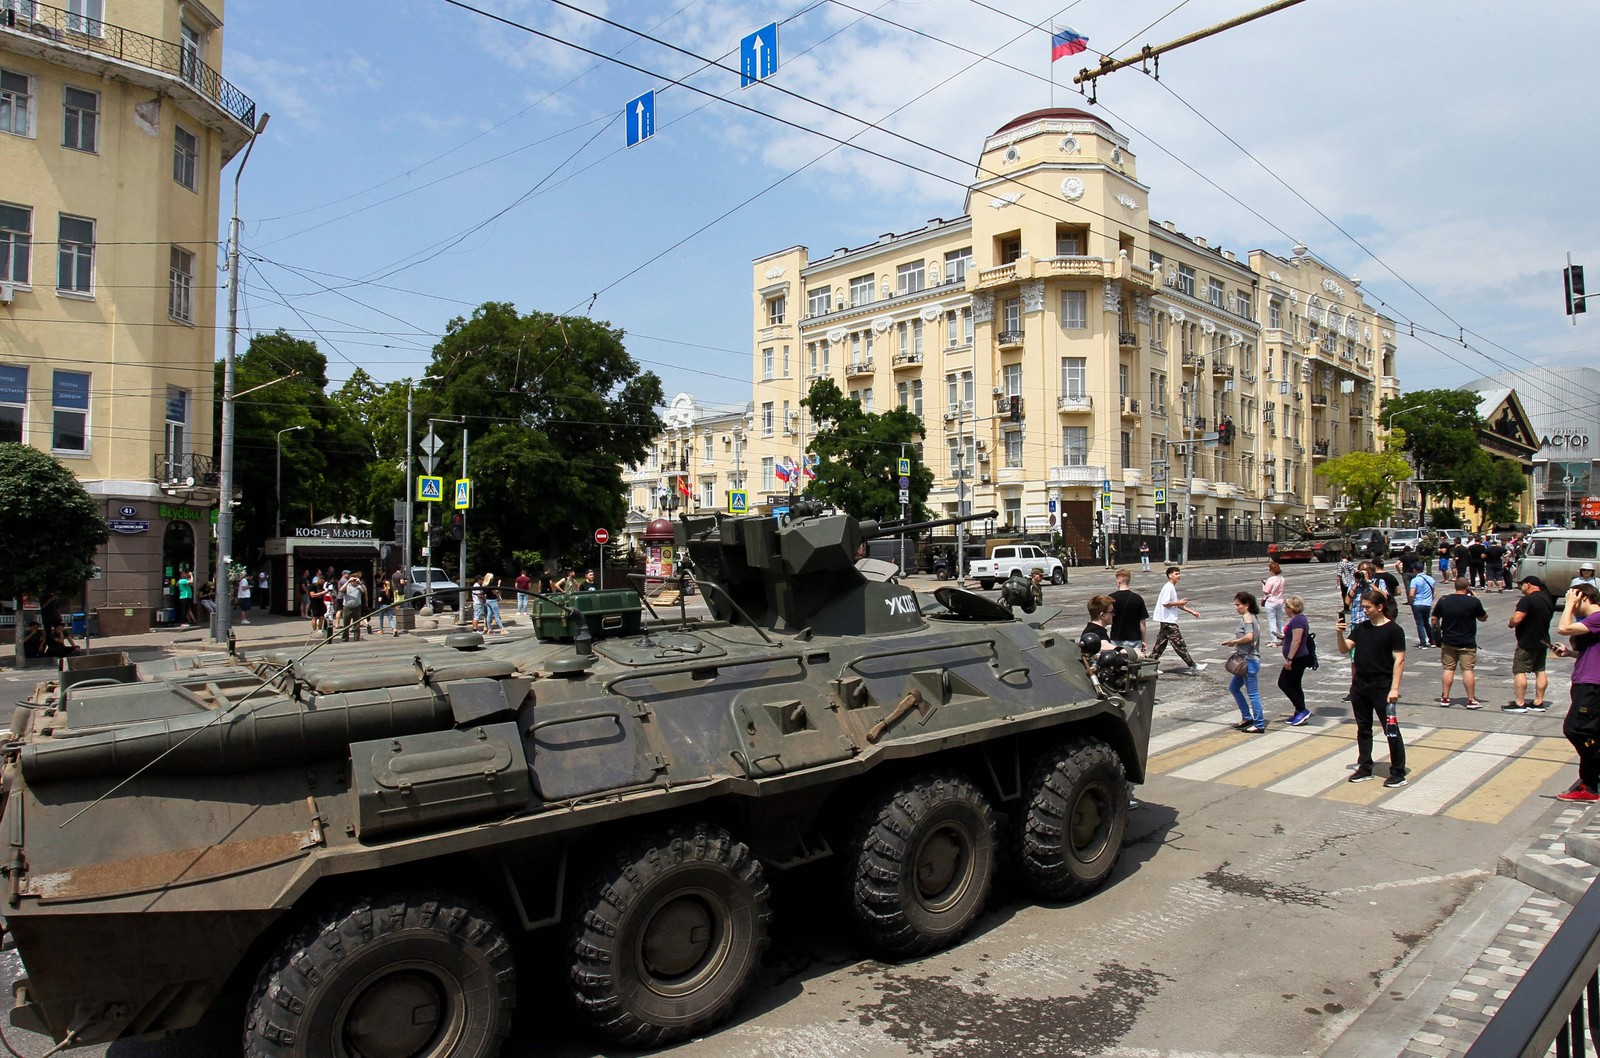 Tanques de paramilitares passam por ruas da cidade de Rostov, no Sul da Rússia — Foto: STRINGER / AFP